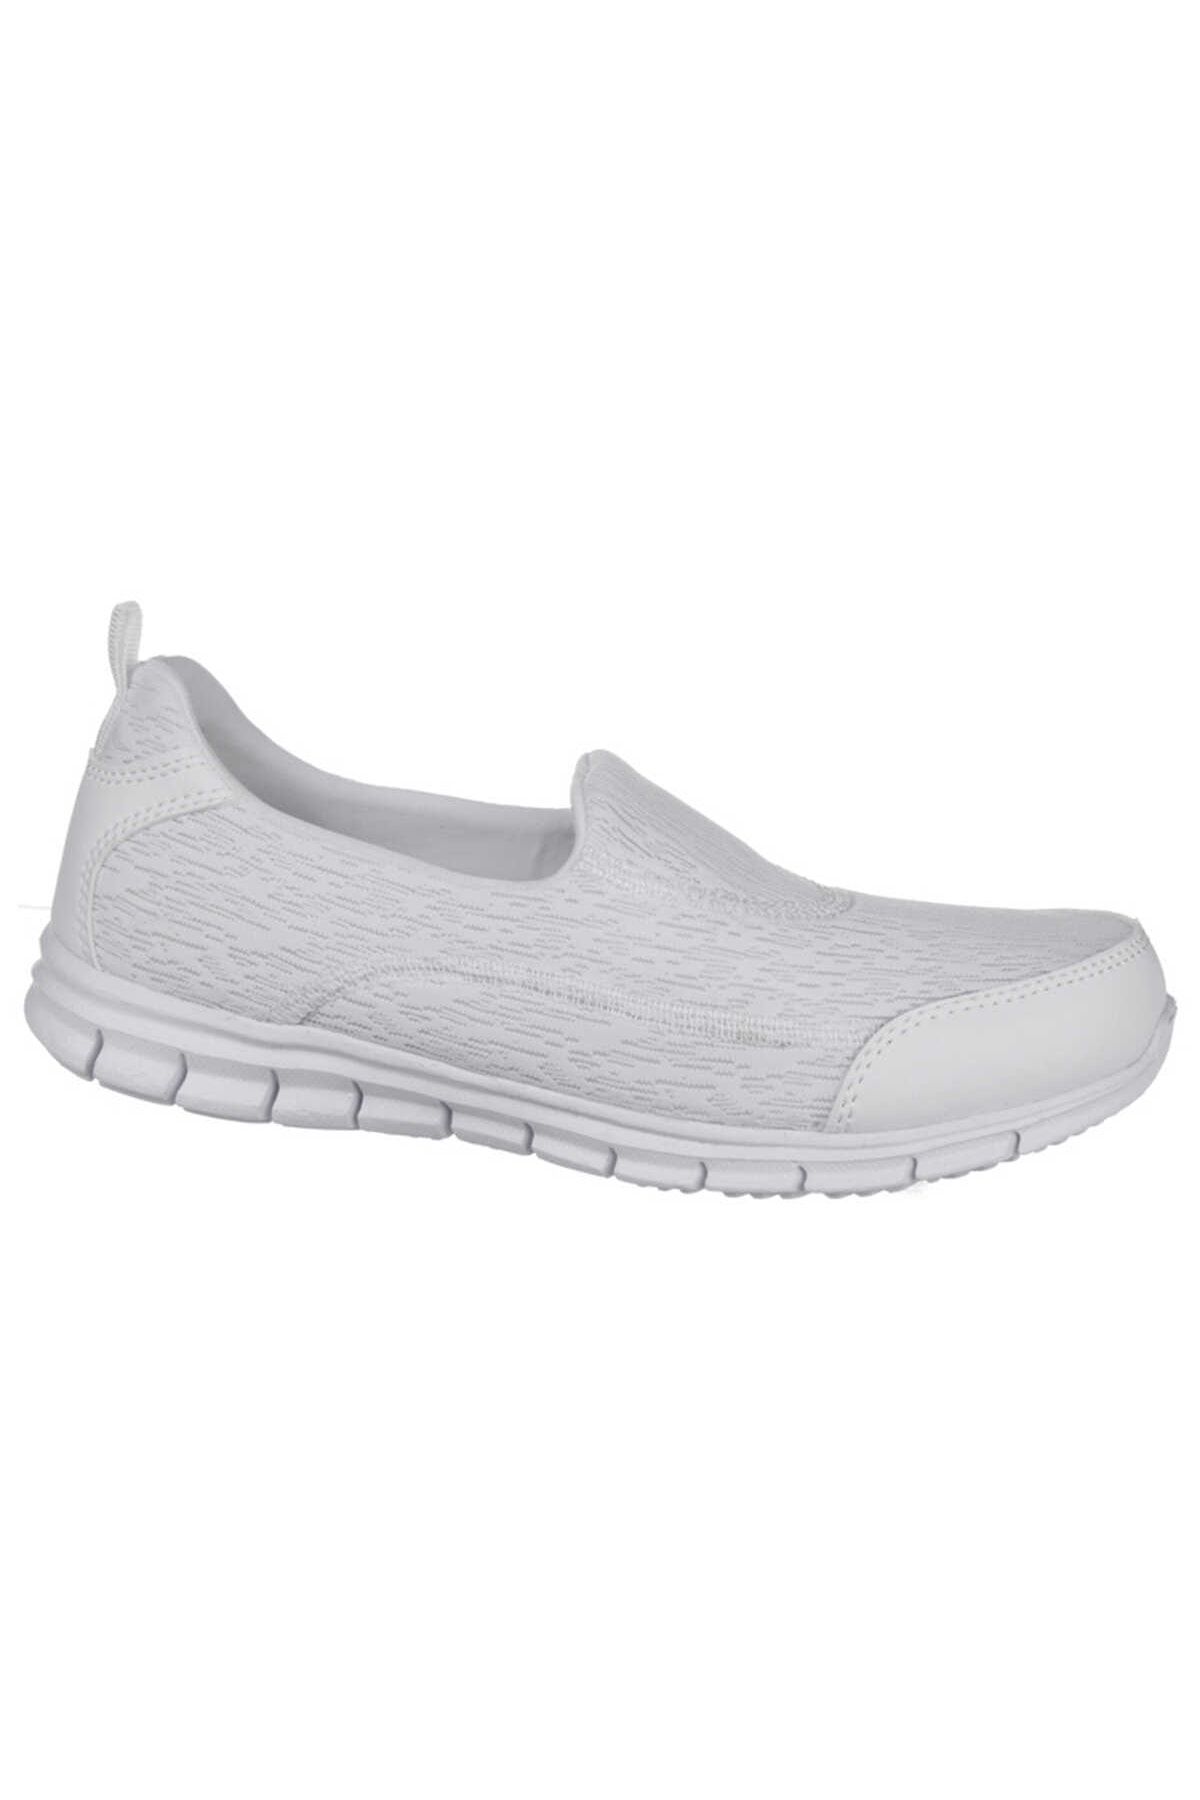 Scooter Sneaker Beyaz Kadın Ayakkabı Z5480tb